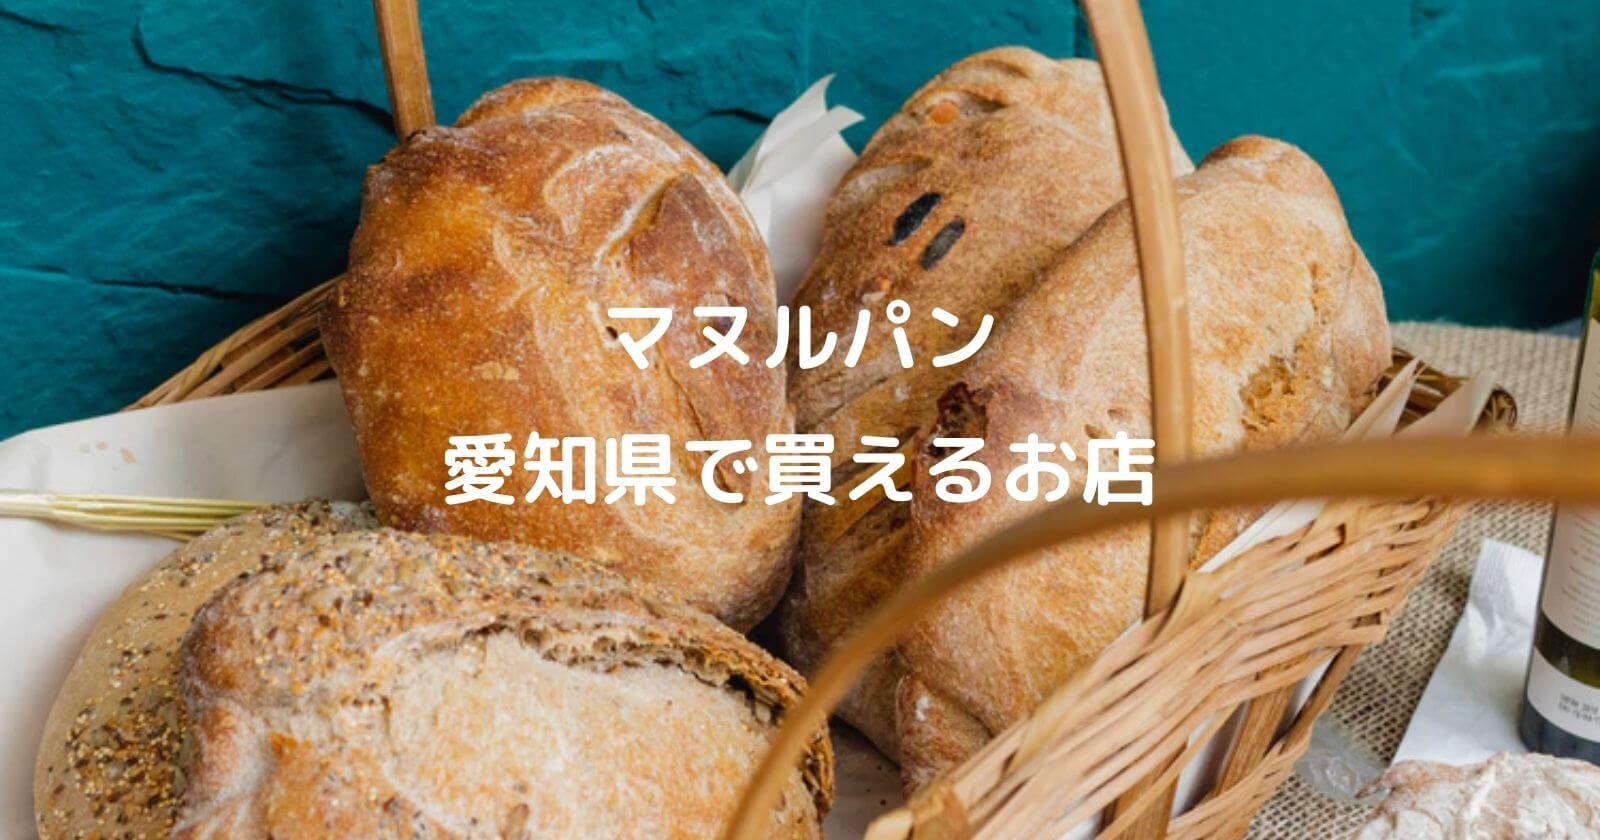 愛知県でマヌルパンが買えるお店